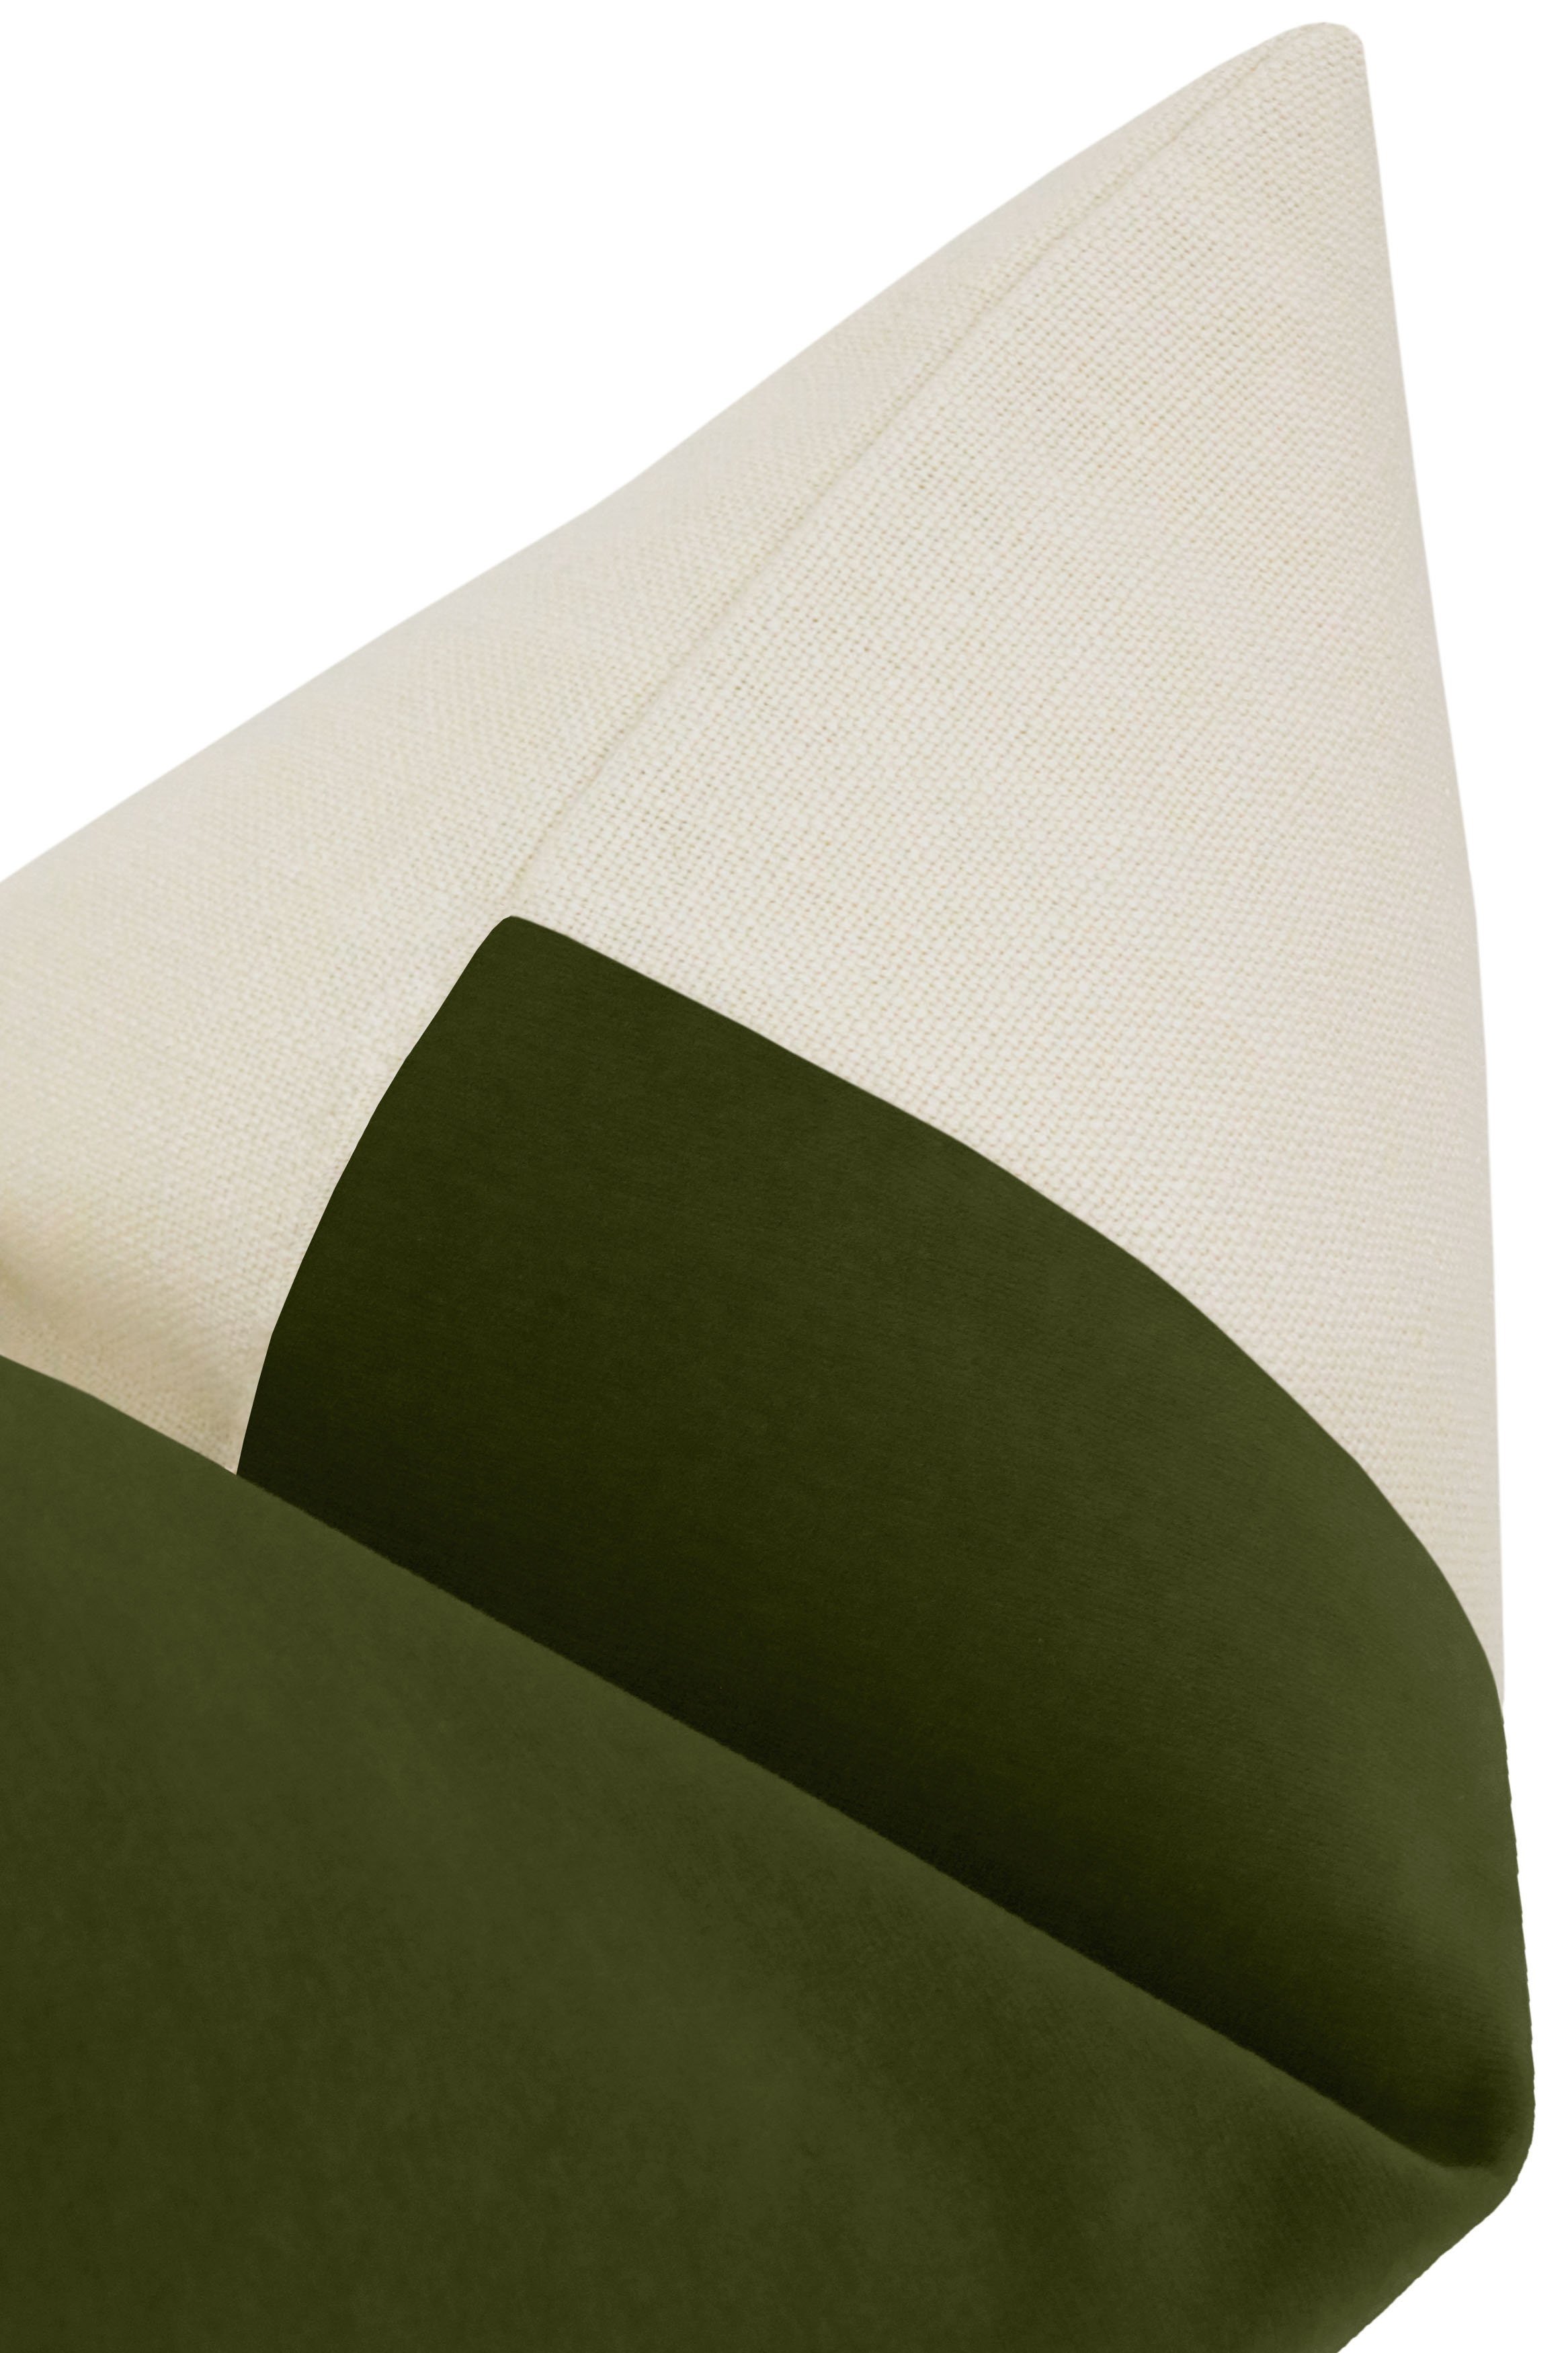 Panel Studio Velvet Pillow Cover, Olive, 20" x 20" - Image 2